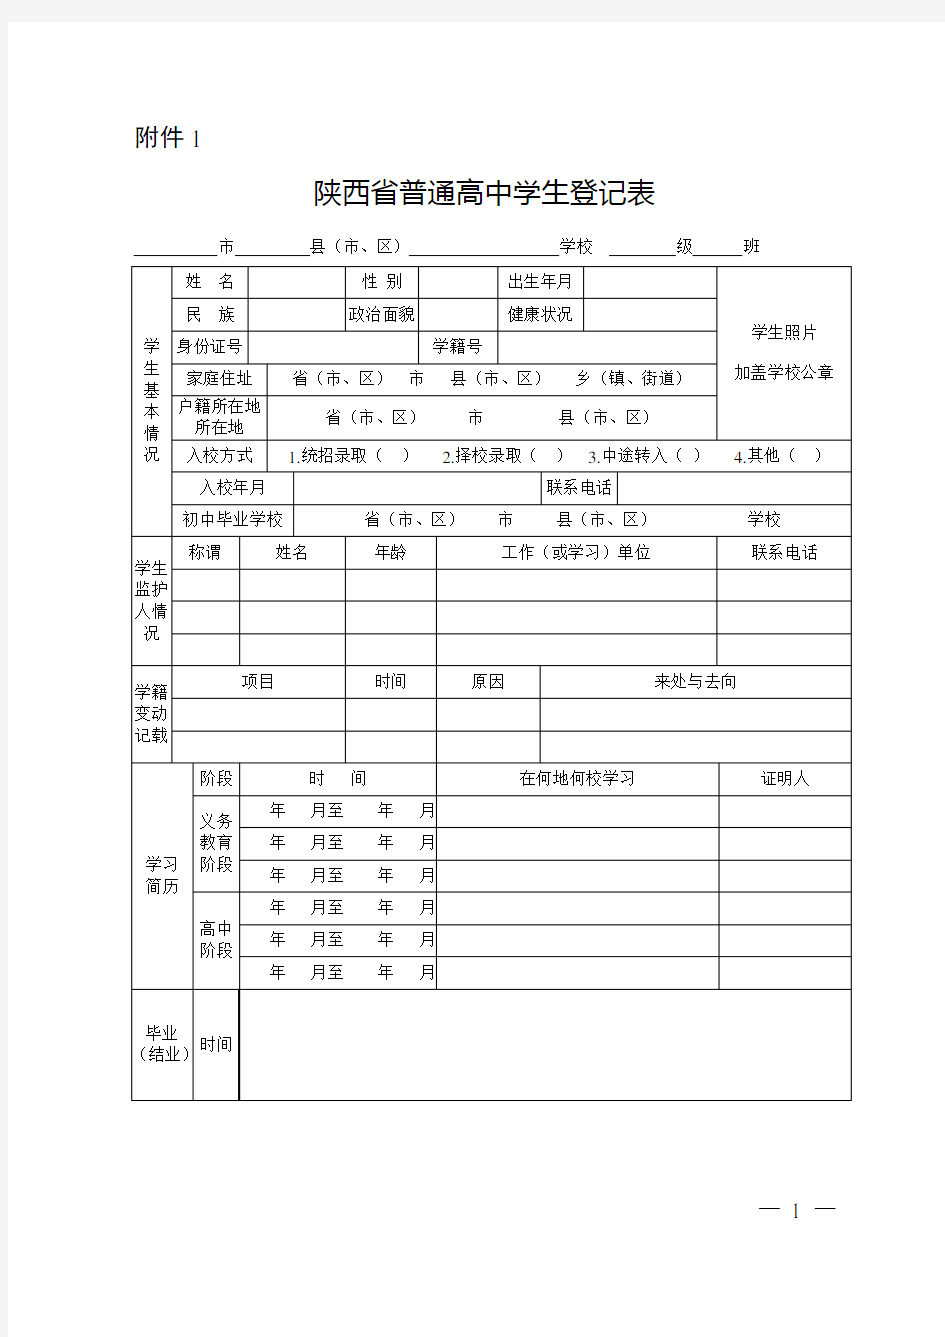 陕西省普通高中学生登记表